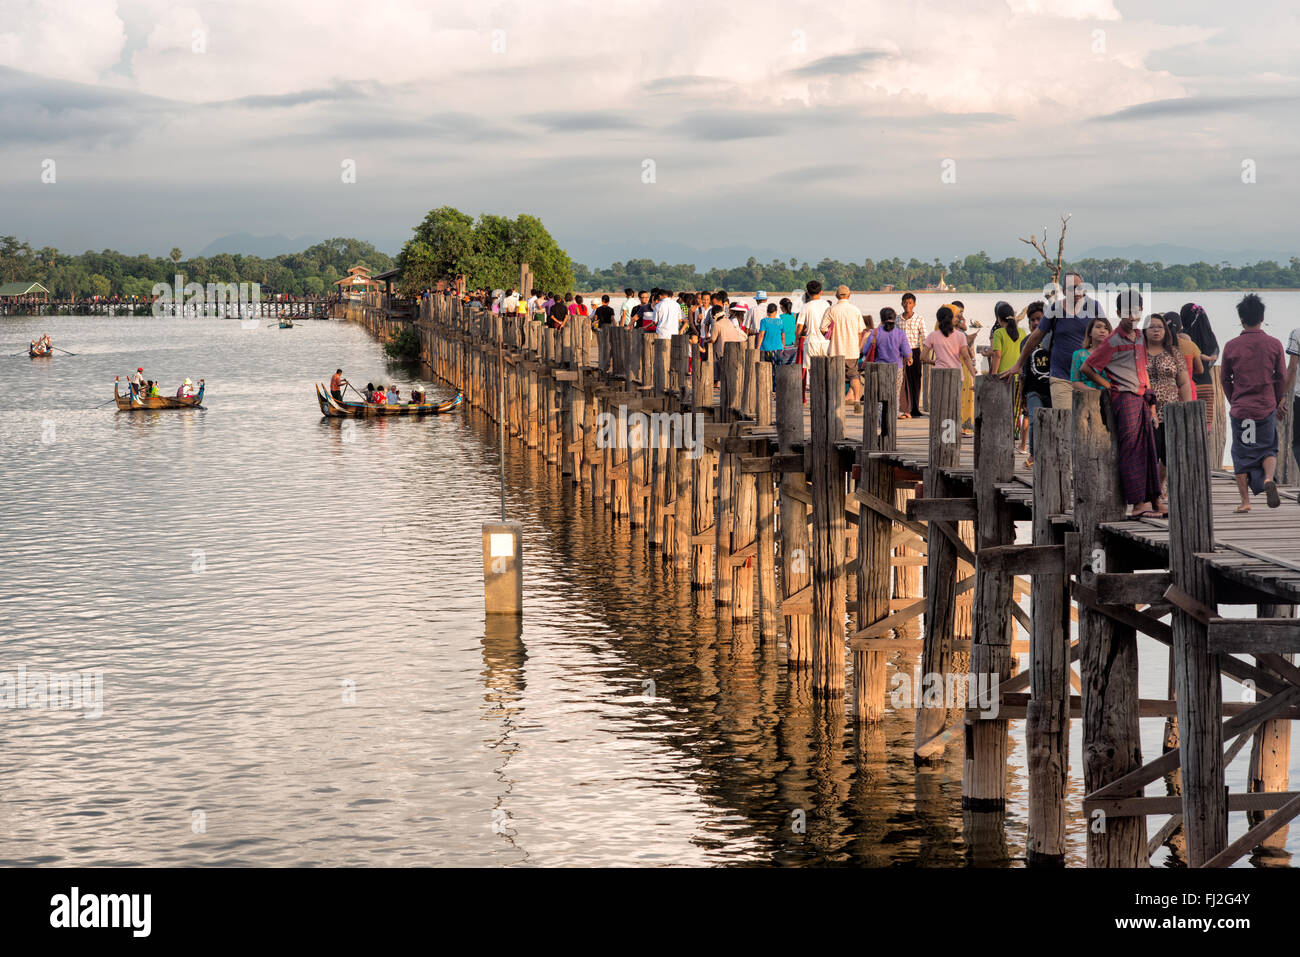 MANDALAY, Myanmar - Stretching mit einer 3/4 Meile über Taungthaman See neben der alten Hauptstadt Amarapura (jetzt Teil von Mandalay), die U-Bein Brücke stammt aus dem Jahr 1850 und ist angeblich die längste teak Brücke in der Welt zu sein. Stockfoto